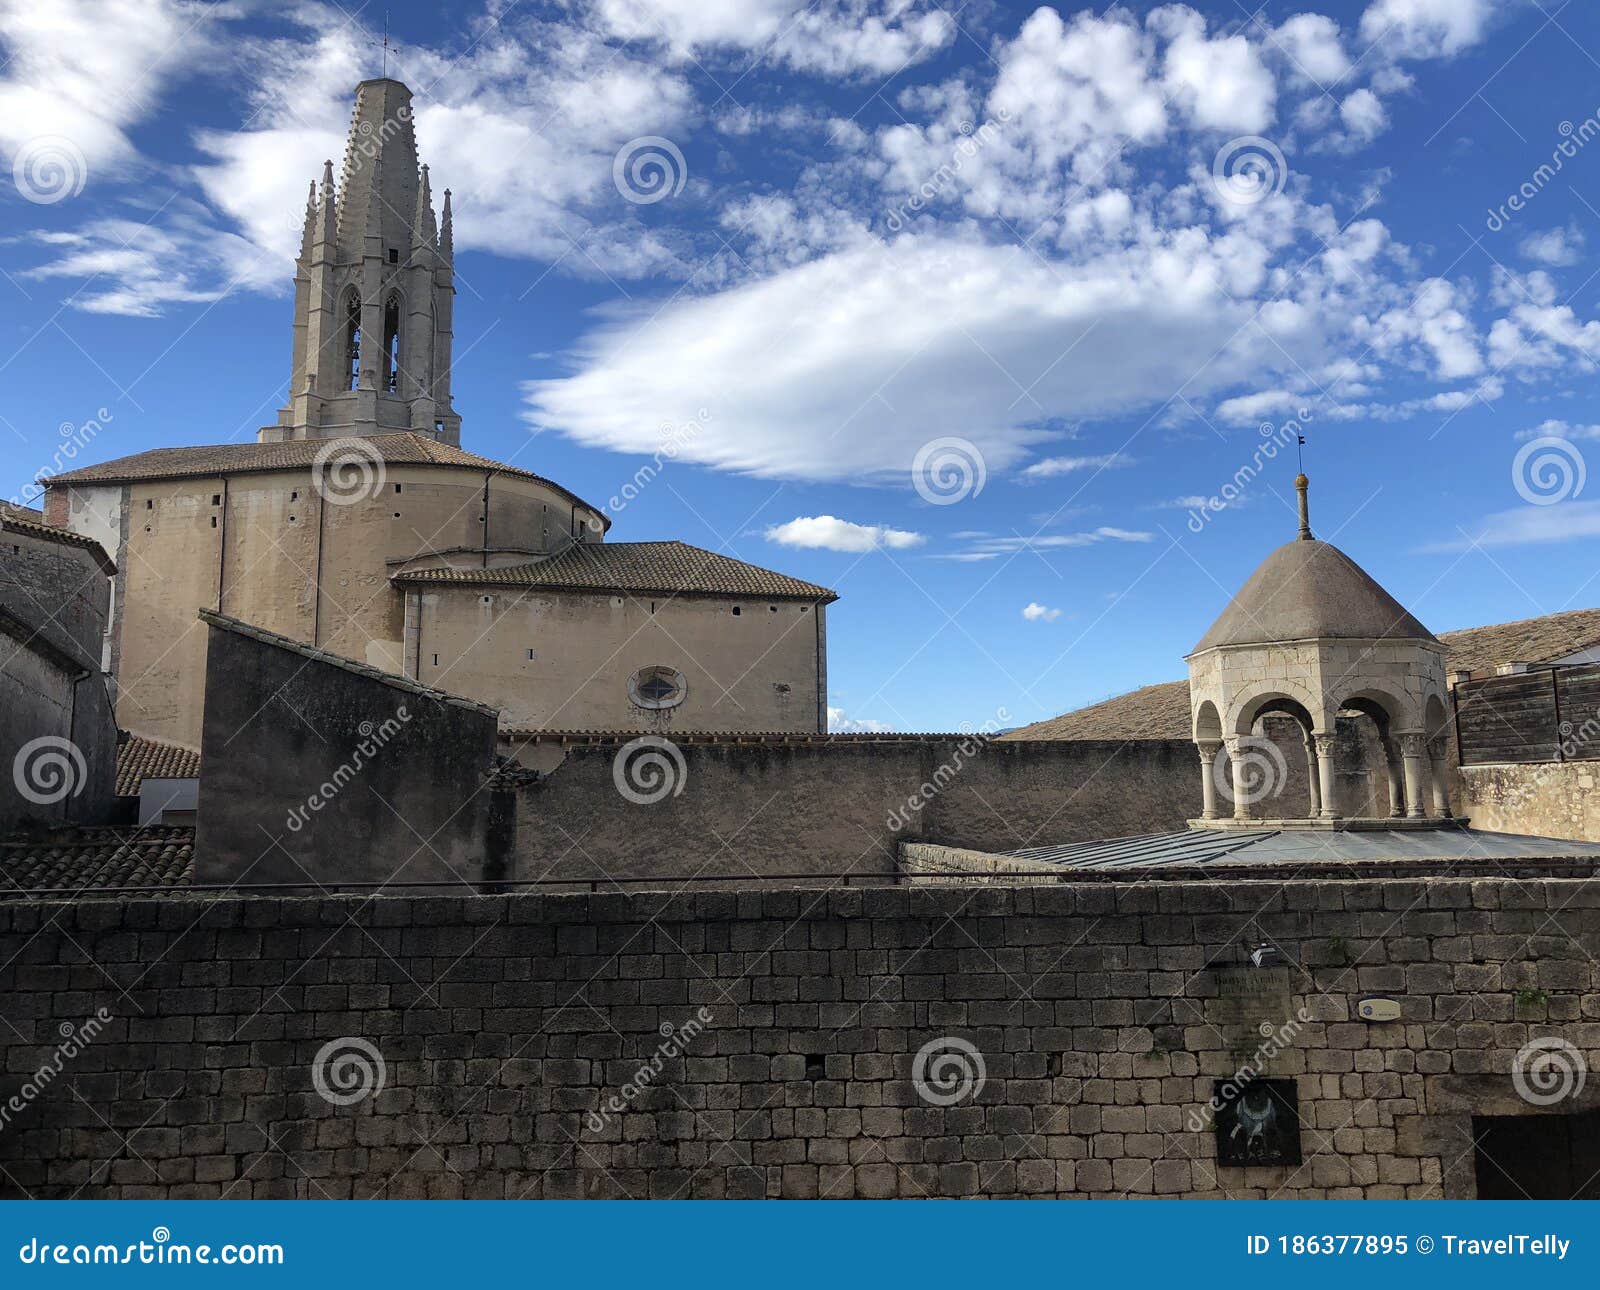 banys arabs and the basilica de sant feliu